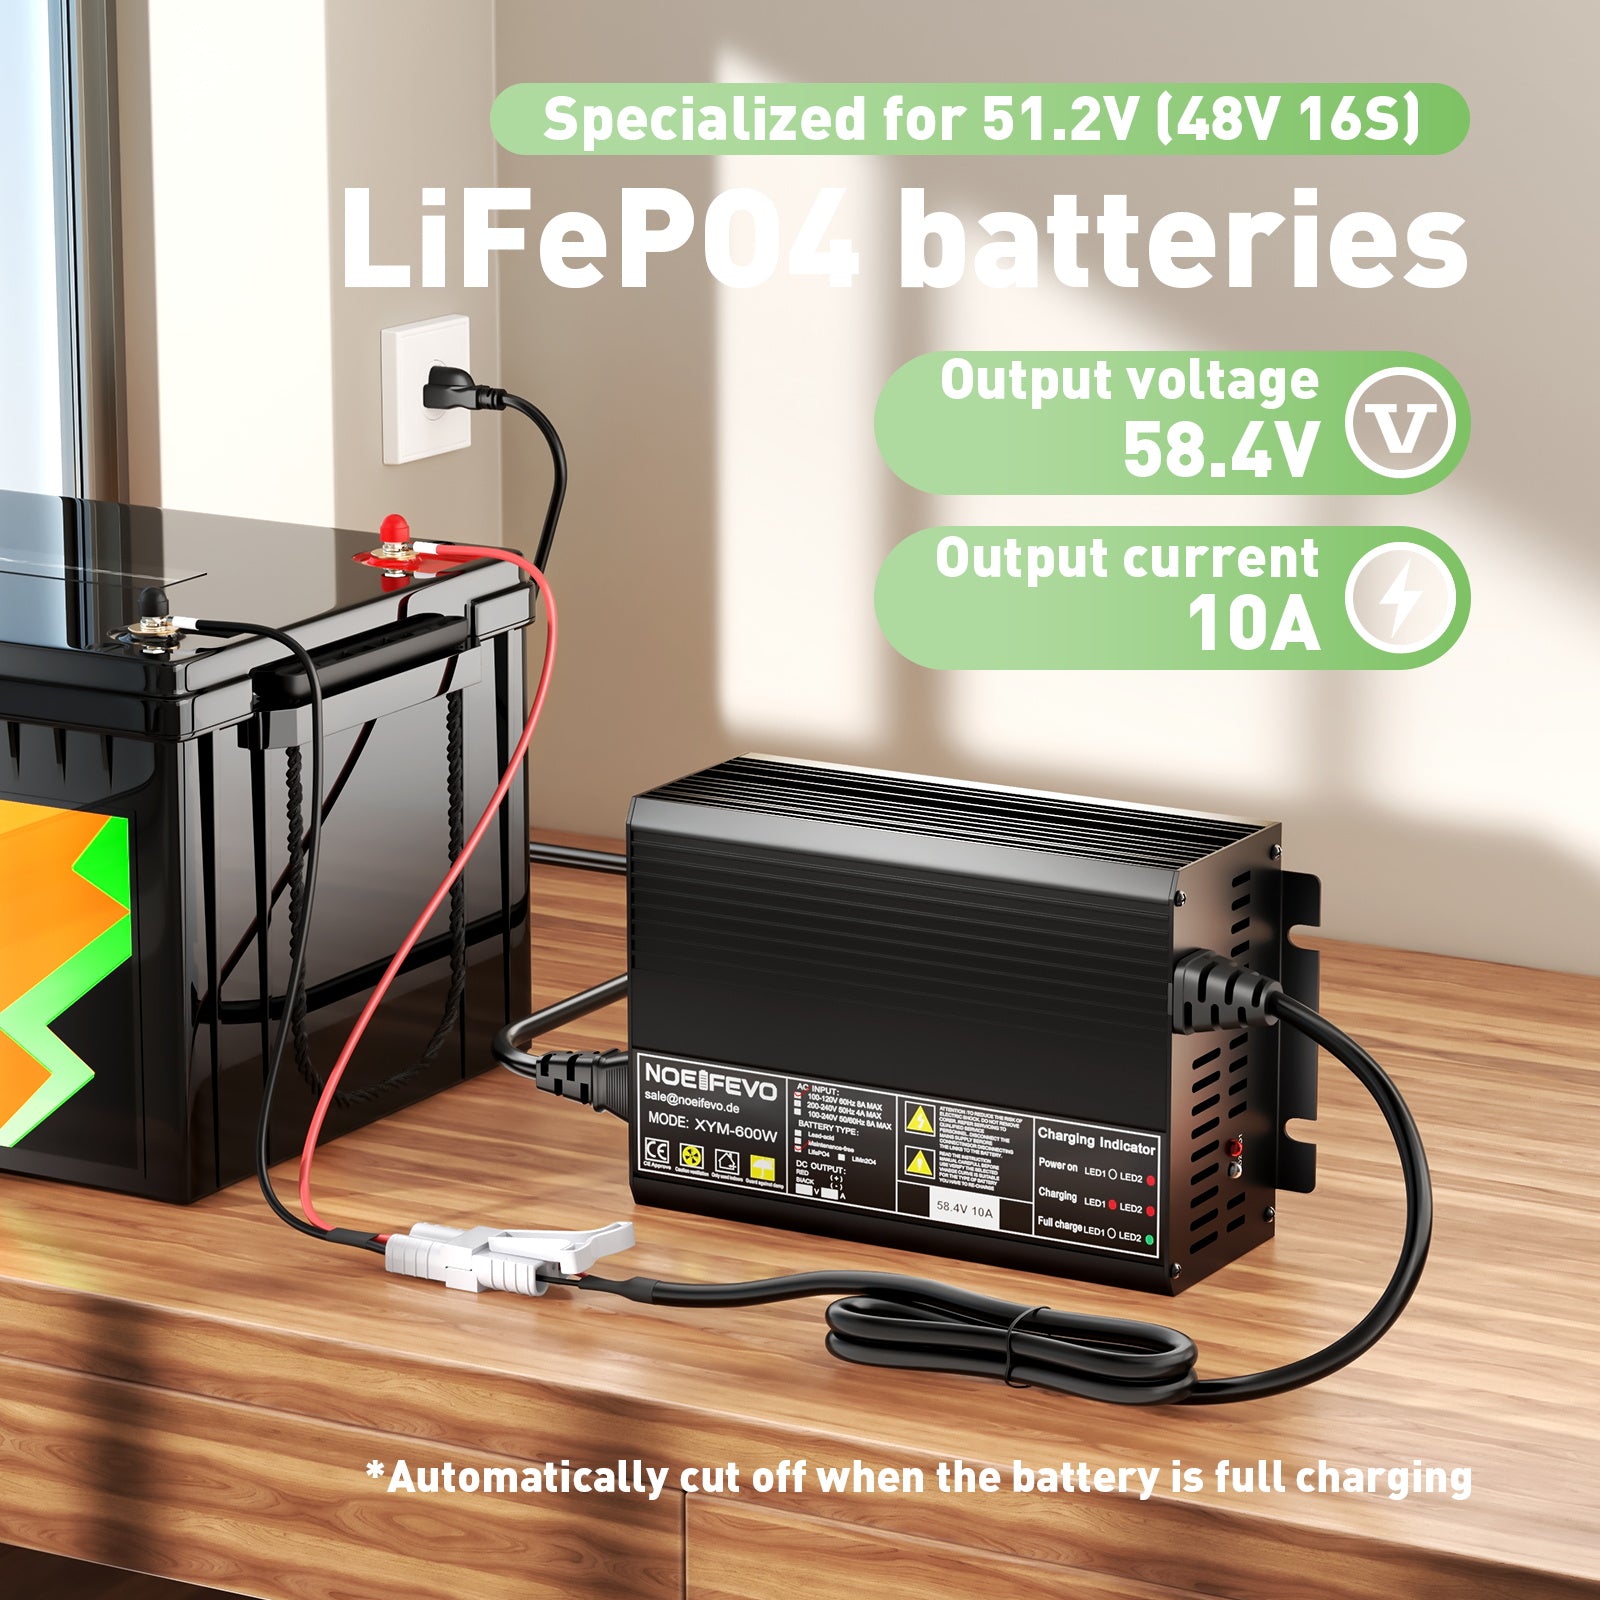 NOEIFEVO 58.4V 10A LiFePO4 battery charger for 51.2V(48V 16S) Golf car/Trolling Motors/caravans Battery